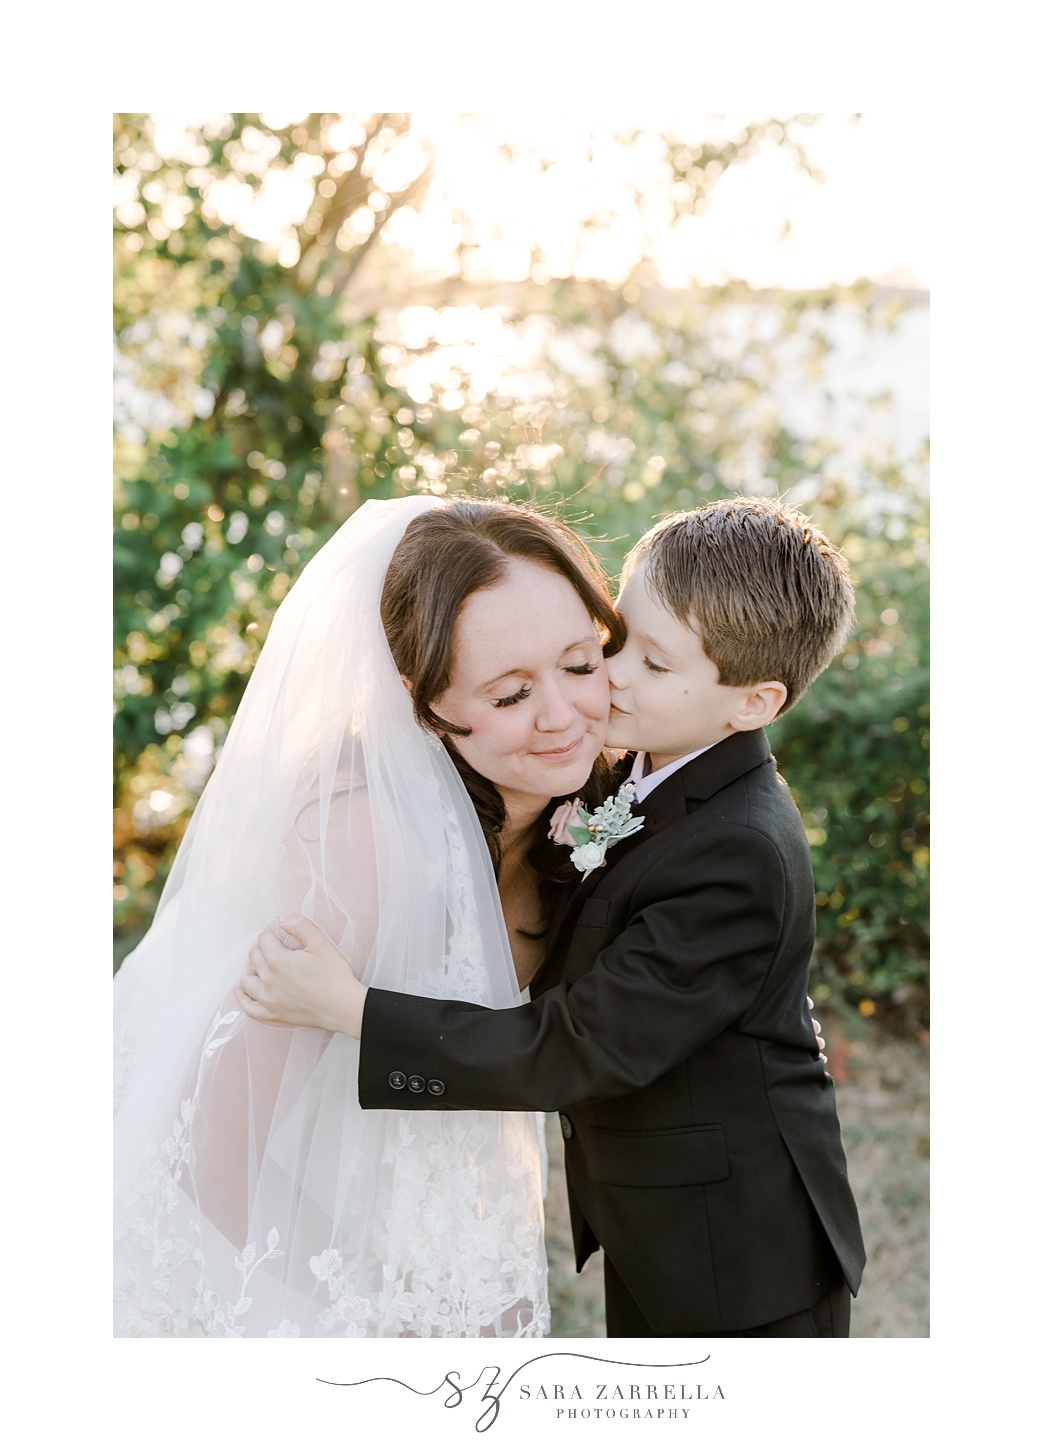 son kisses mom's cheek during RI wedding portraits 